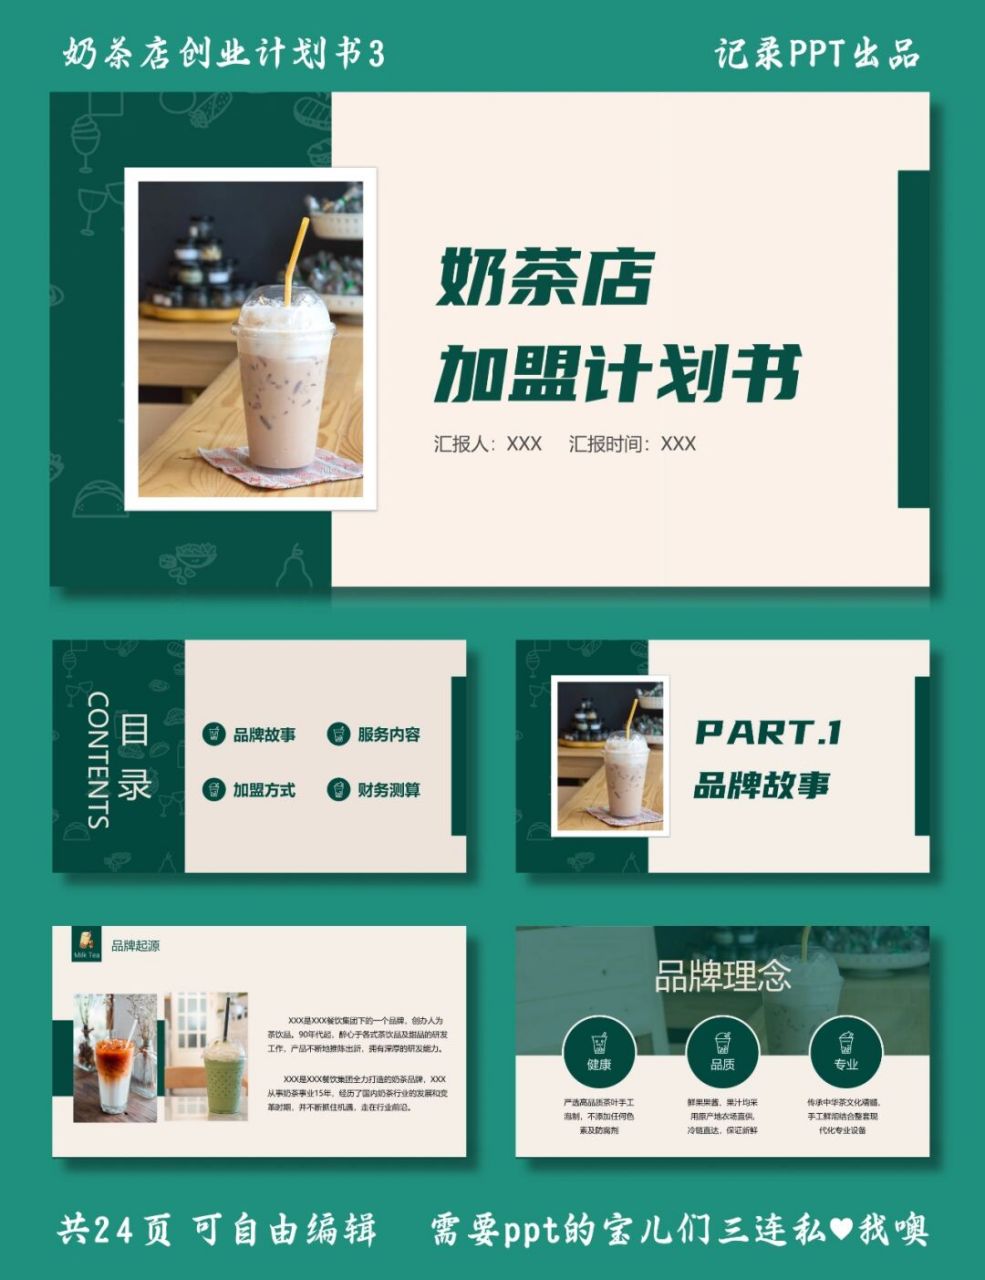 奶茶店加盟计划书 奶茶店创业计划书3 ppt模板 目录包括 ①品牌故事